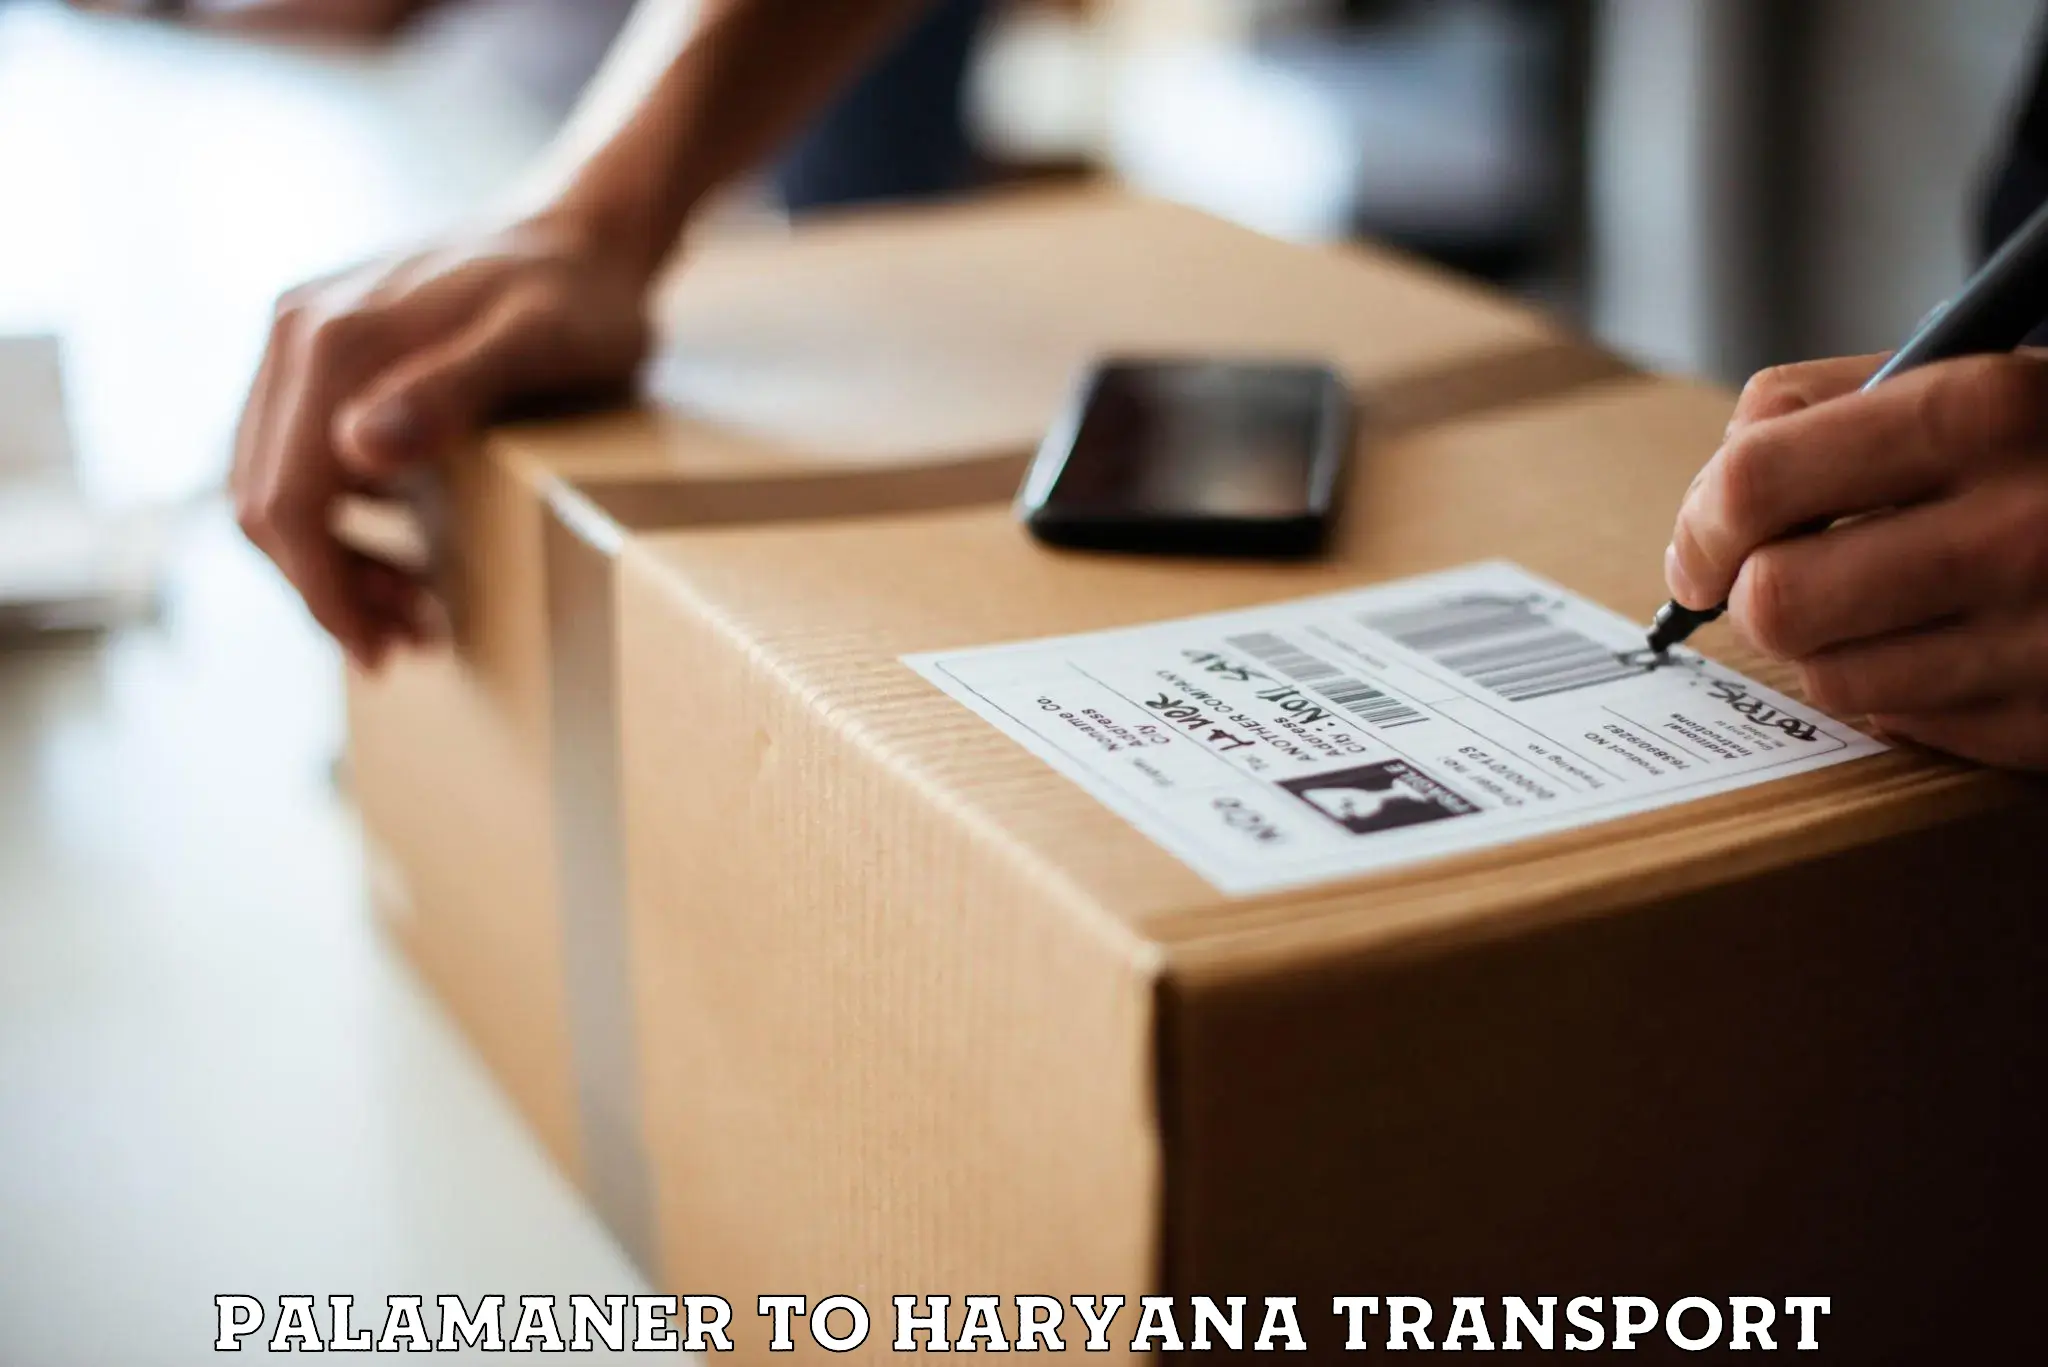 Furniture transport service in Palamaner to Kurukshetra